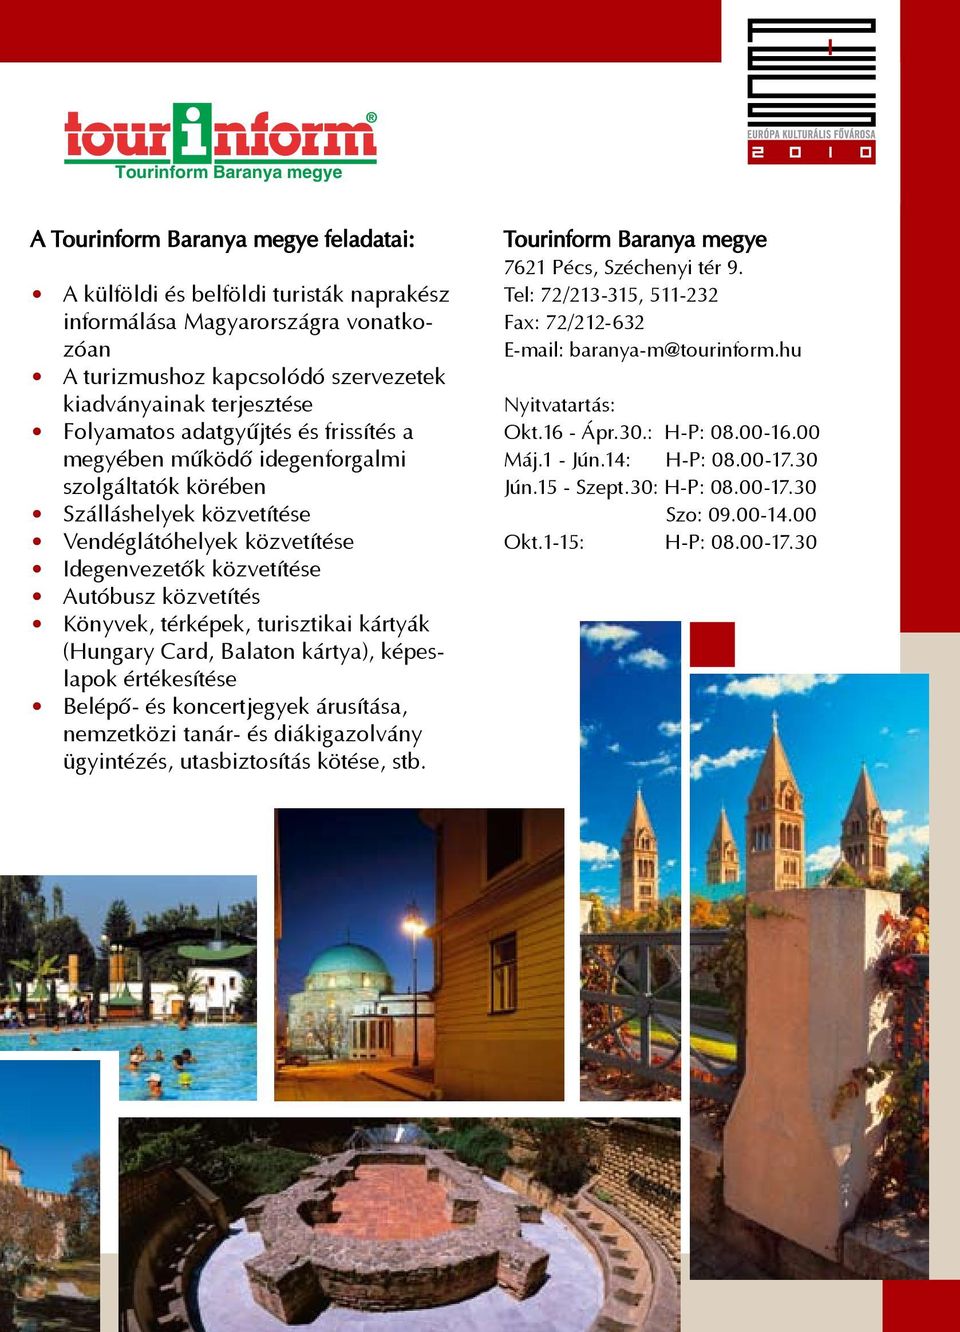 közvetítés Könyvek, térképek, turisztikai kártyák (Hungary Card, Balaton kártya), képeslapok értékesítése Belépő- és koncertjegyek árusítása, nemzetközi tanár- és diákigazolvány ügyintézés,